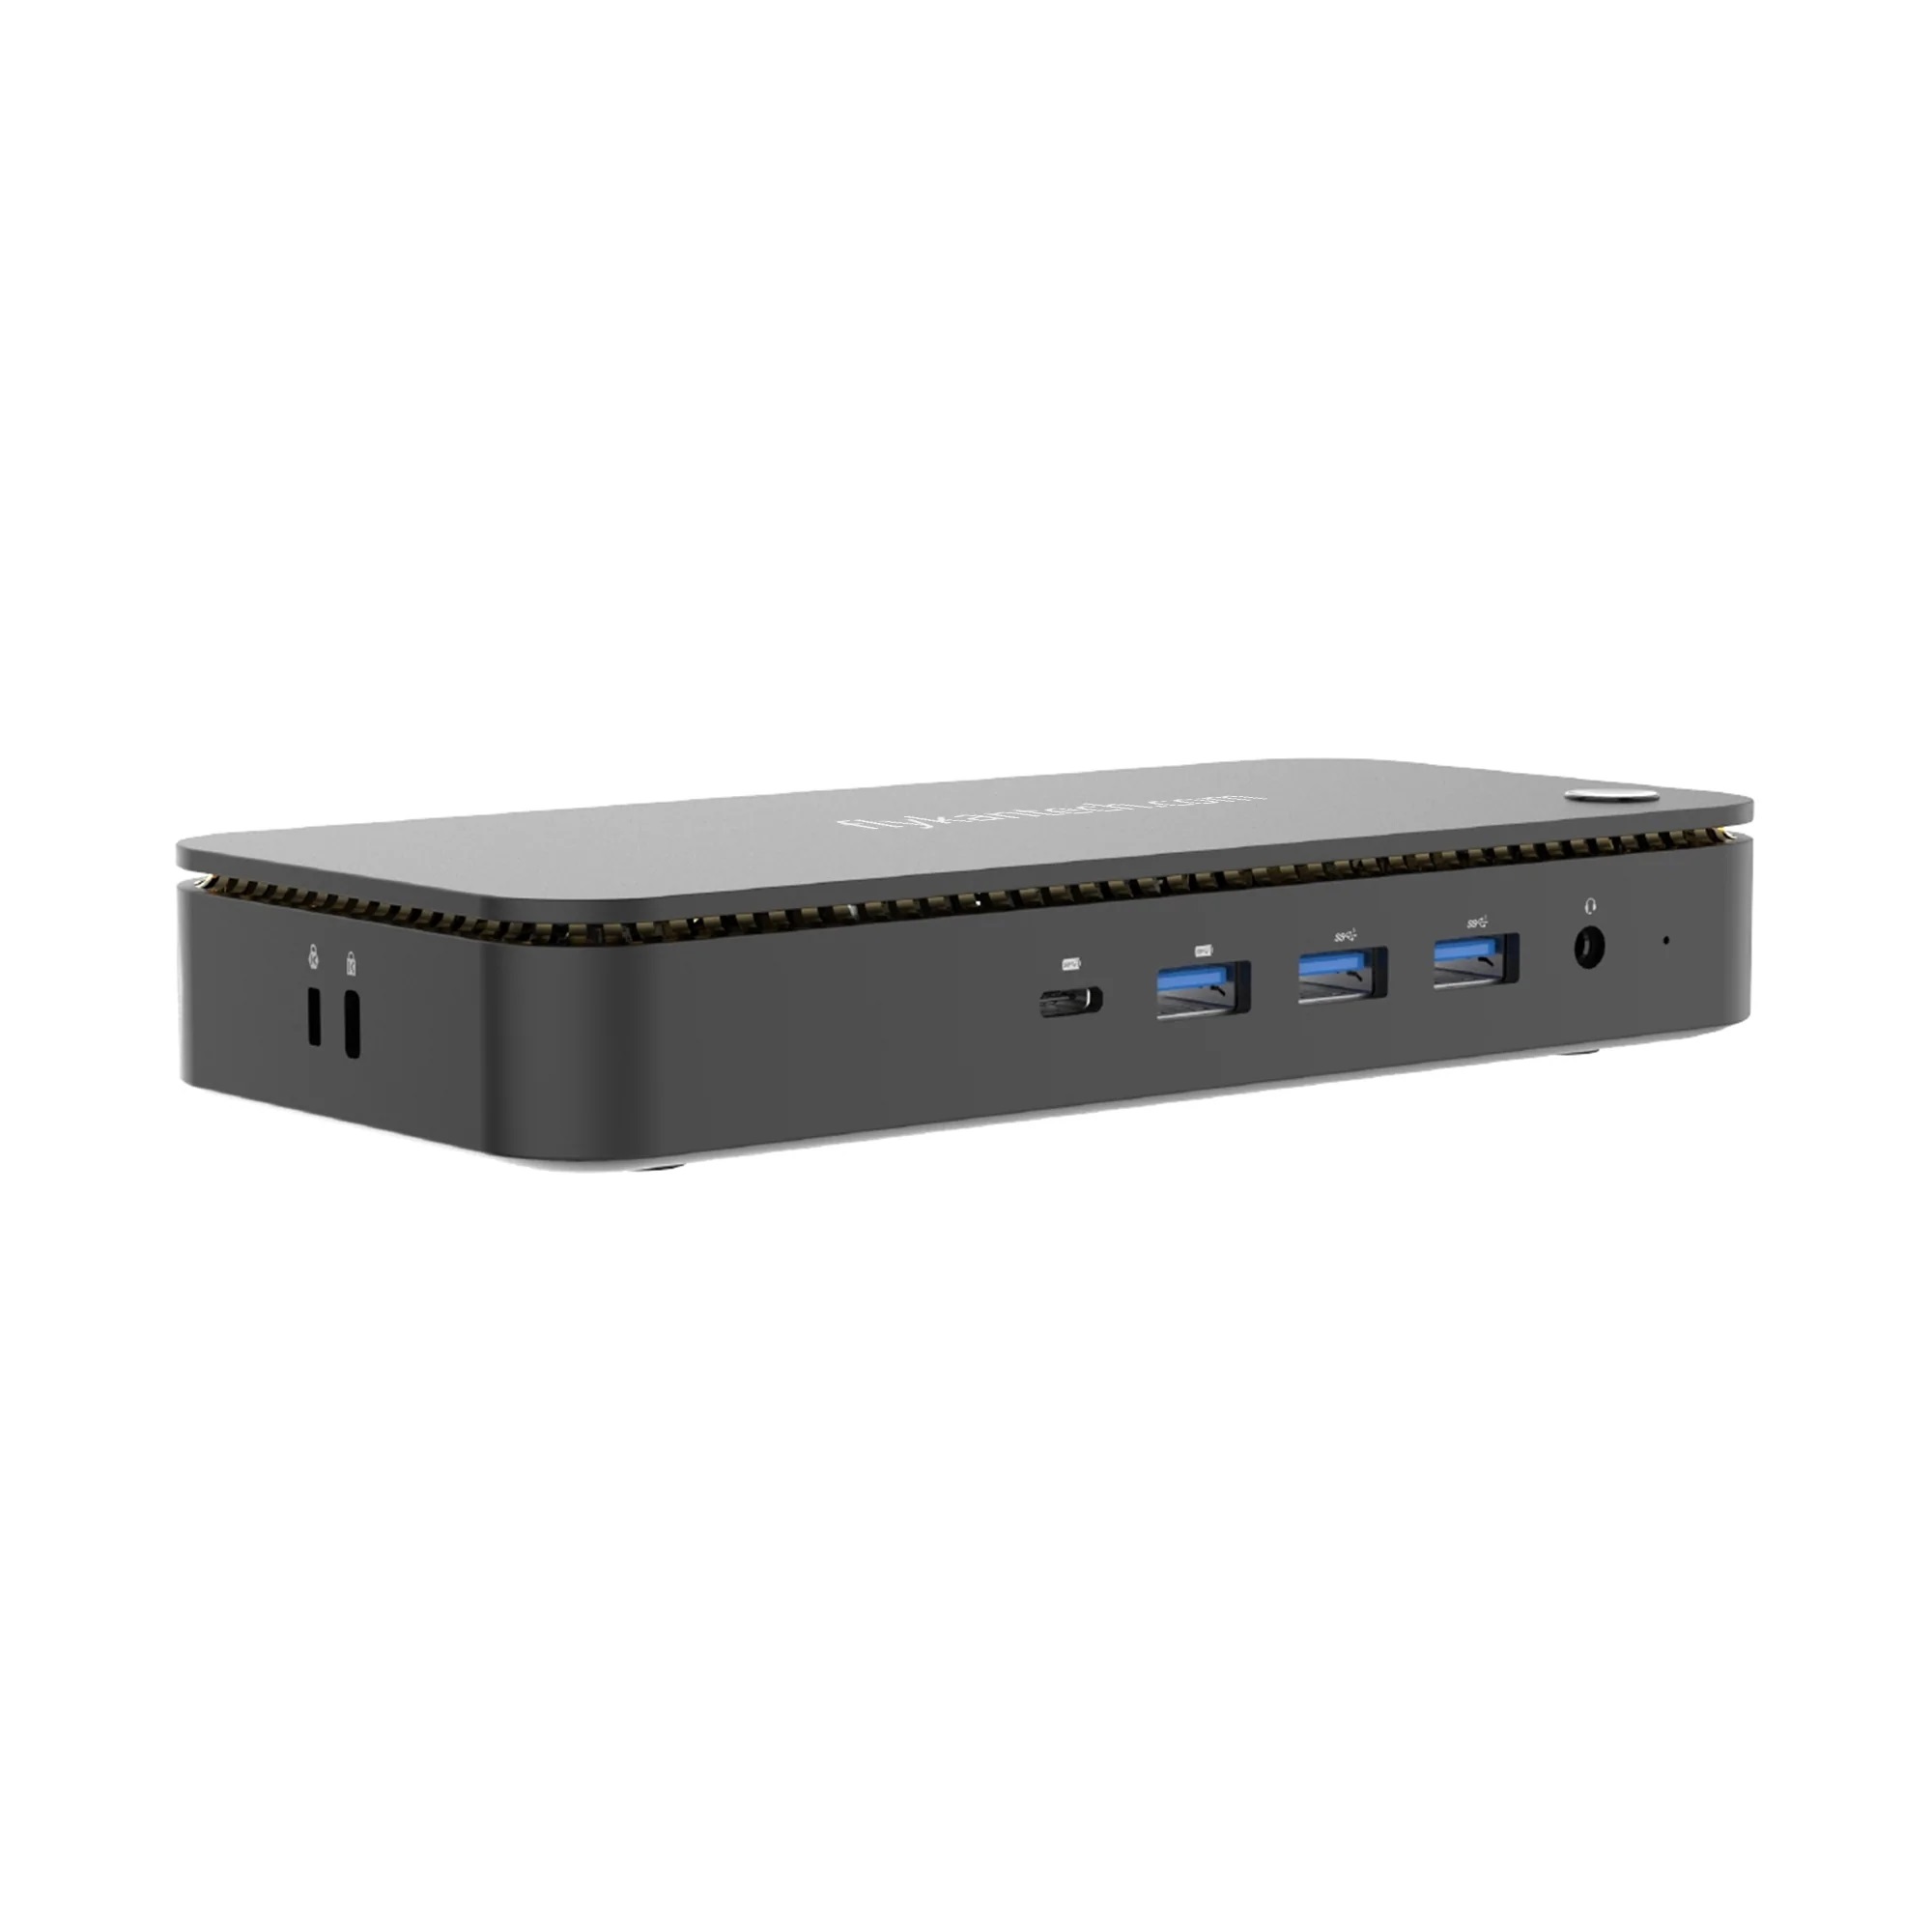 DK1189 | Station d'accueil USB Type-C triple moniteur 4K - DP 1.4 Alt Mode & DSC, 2x DisplayPort 1.4/HDMI 2.0